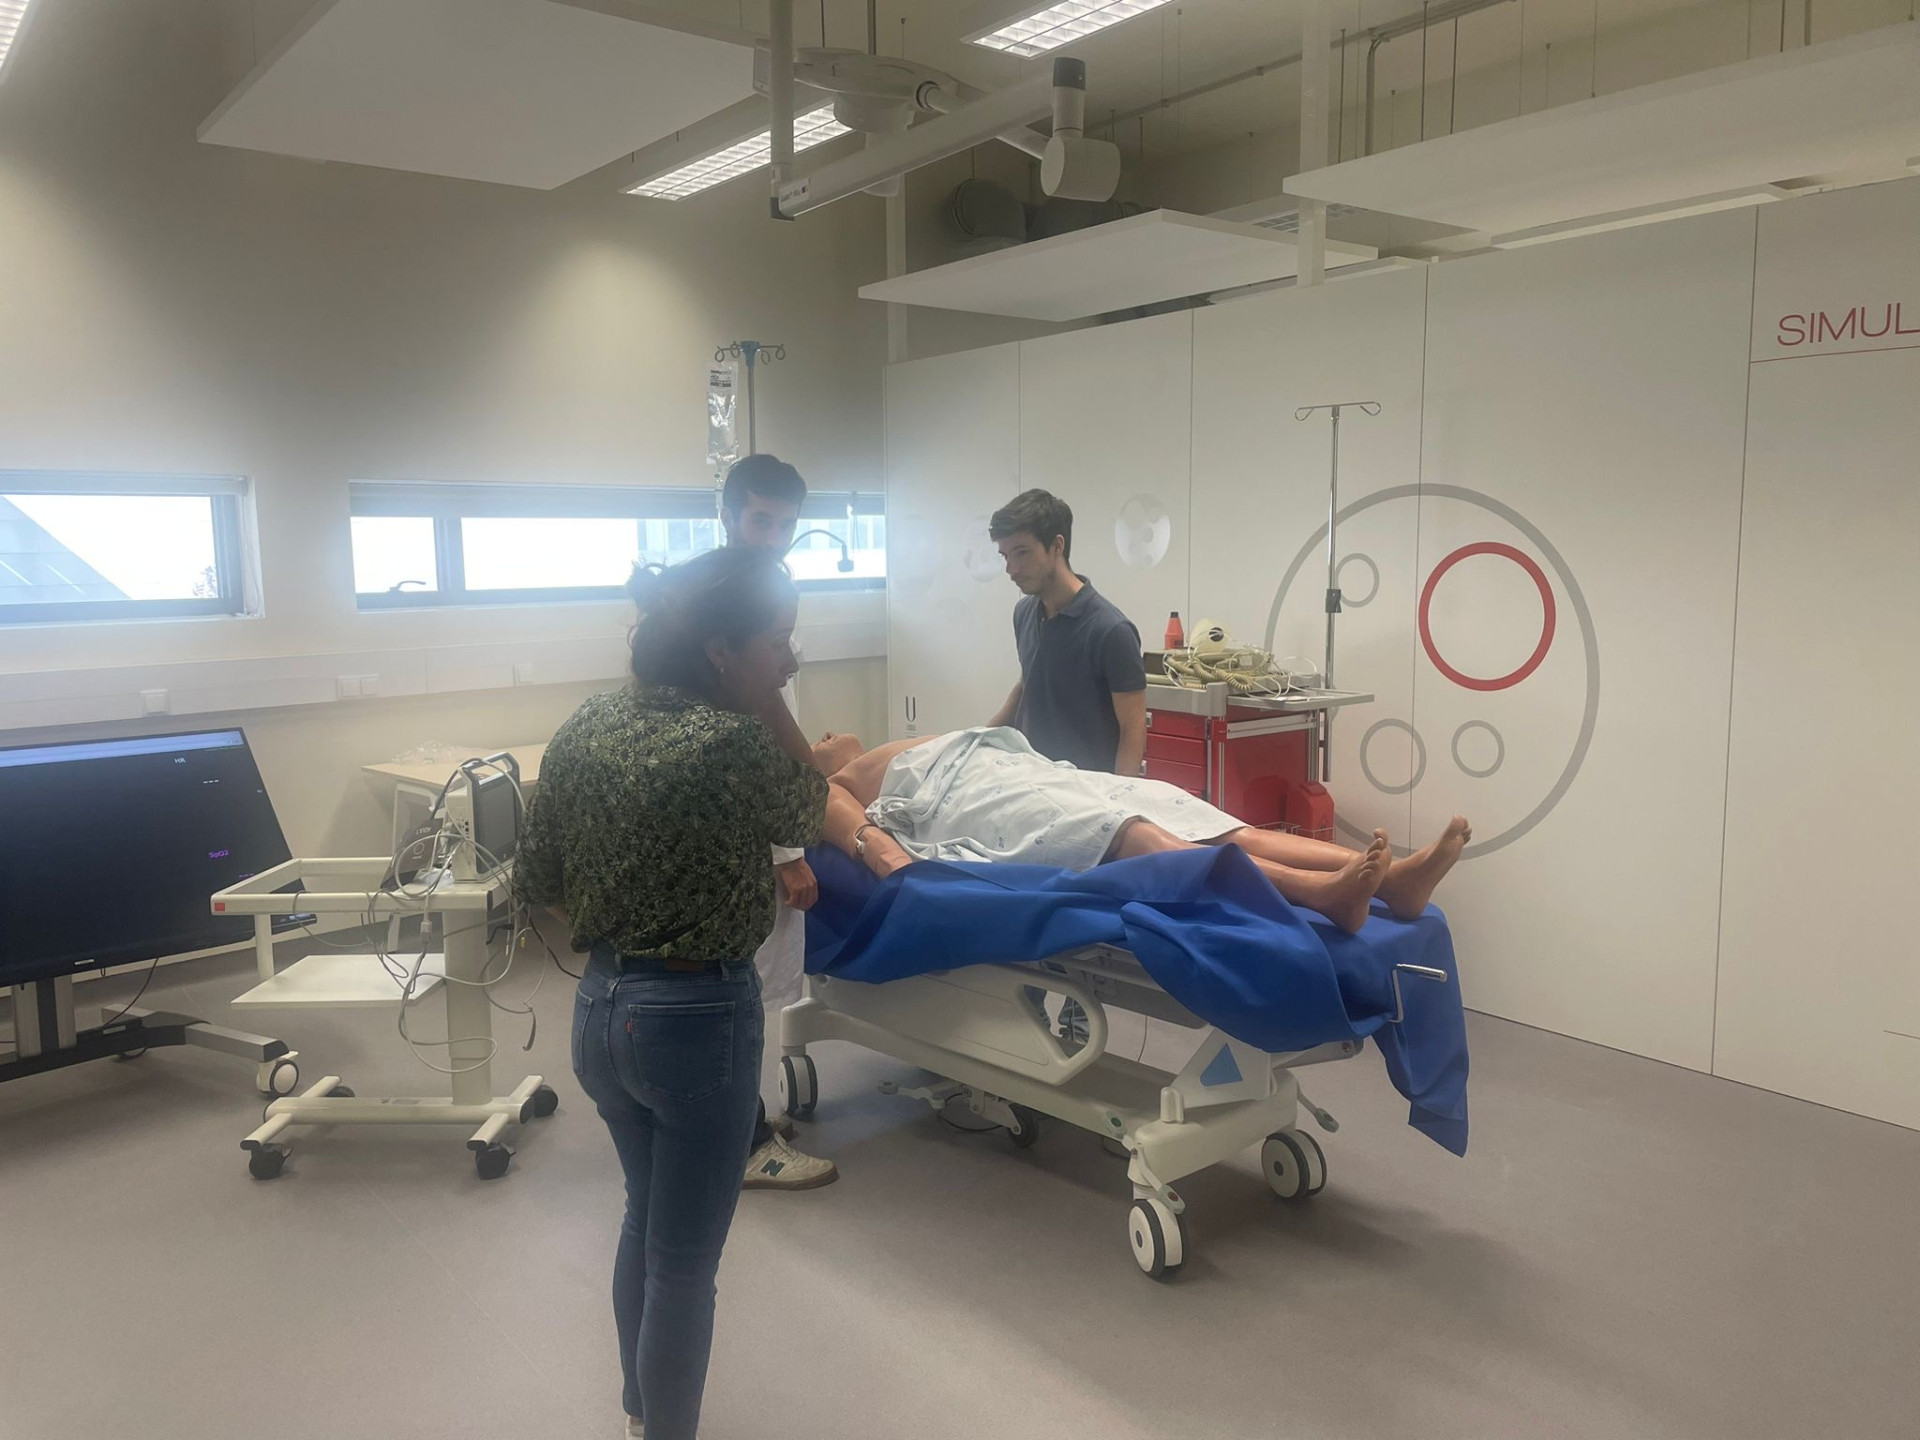 equipa médica no centro de simulação durante formação